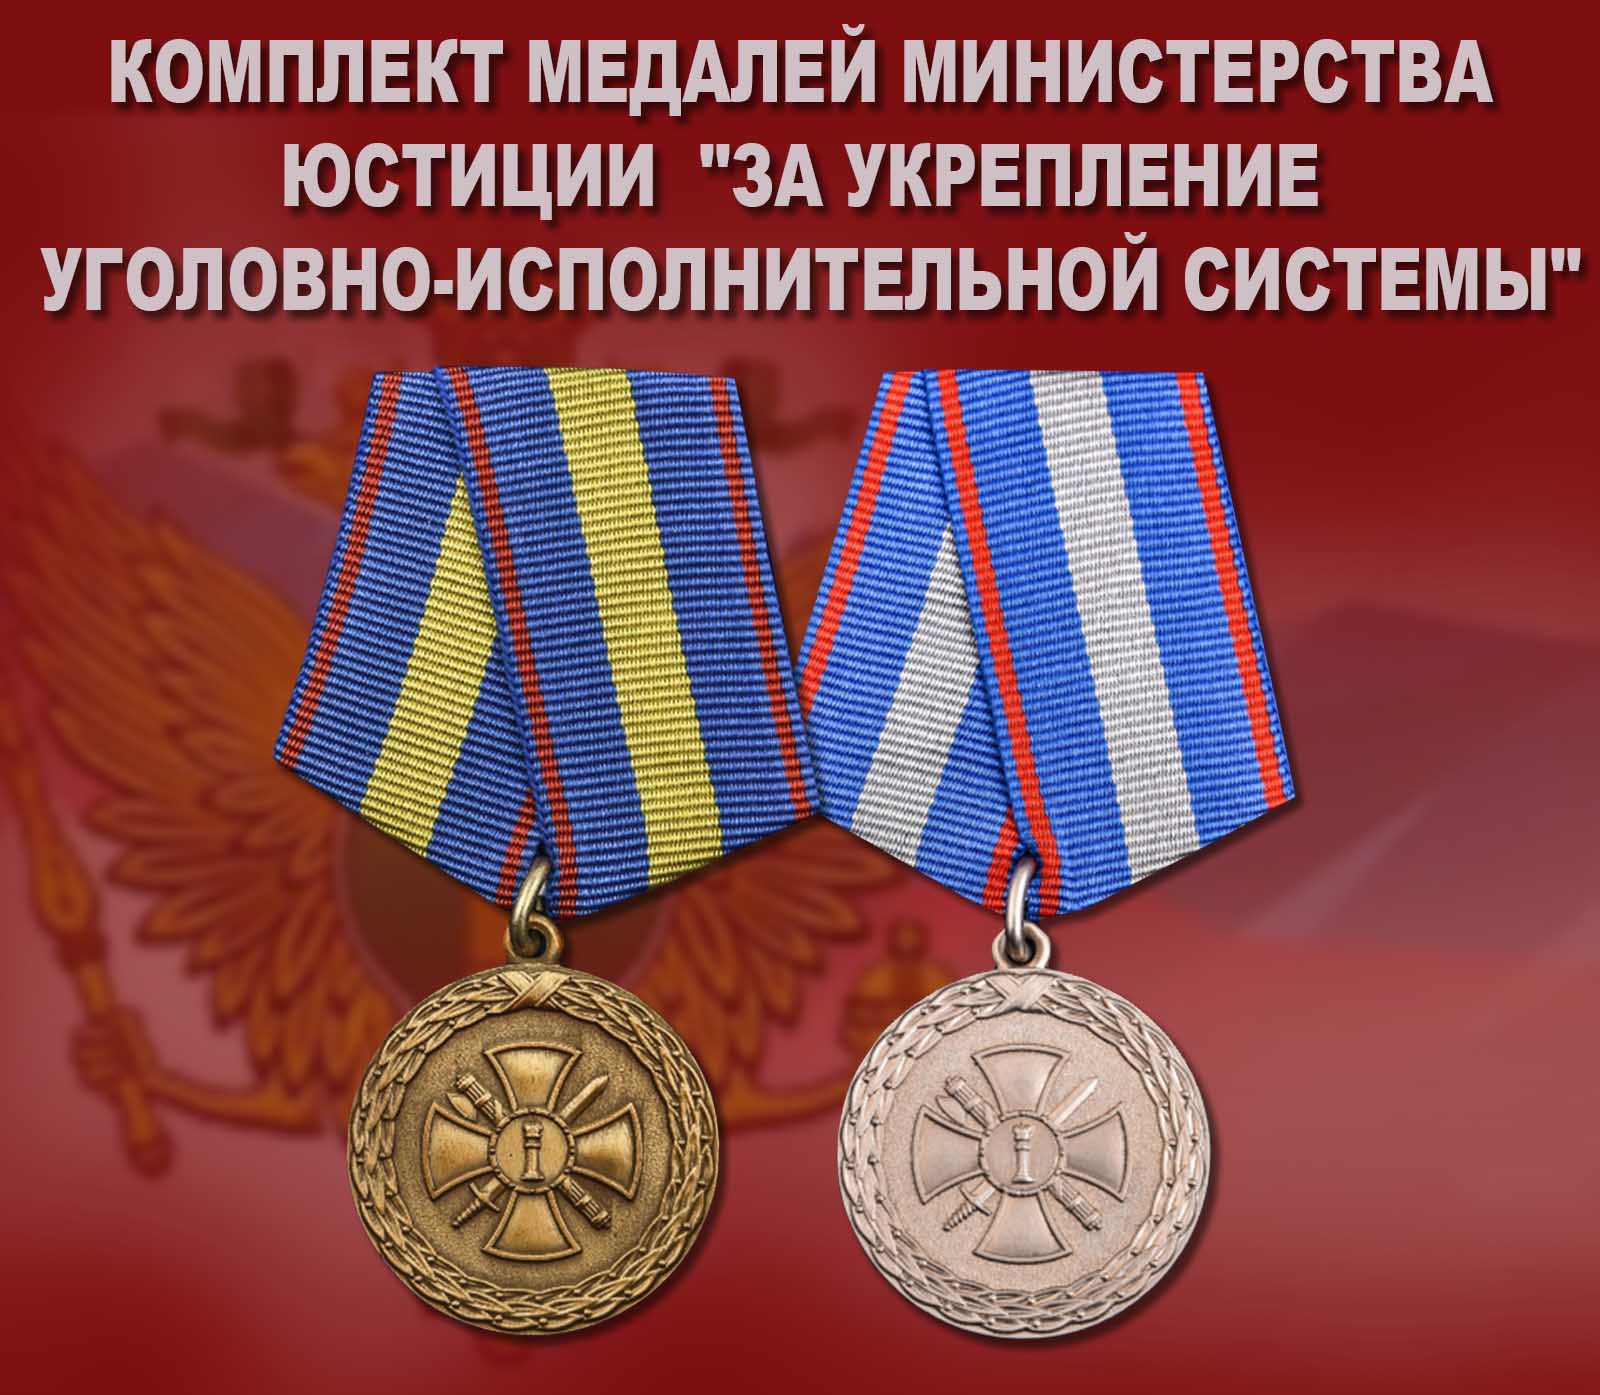 Купить комплект медалей Министерства юстиции "За укрепление уголовно-исполнительной системы"